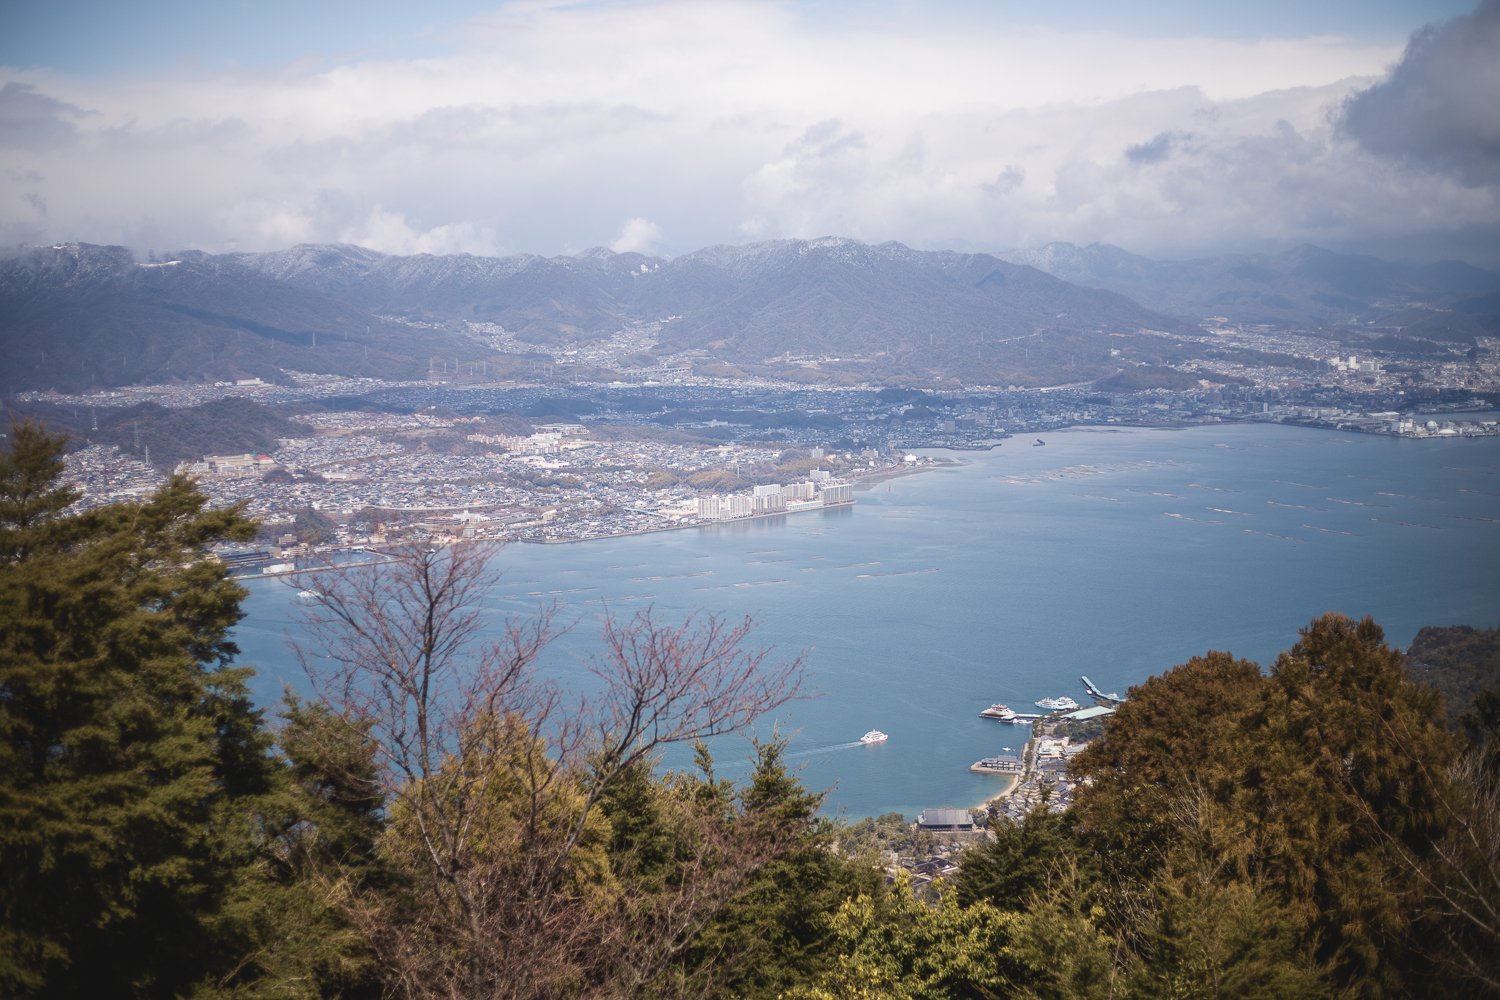 Vue sur la mer et Hiroshima depuis le sommet du Mont Misen. En  contrebas on aperçoit le village de Miyajima avec des ferrys en train de faire la navette.